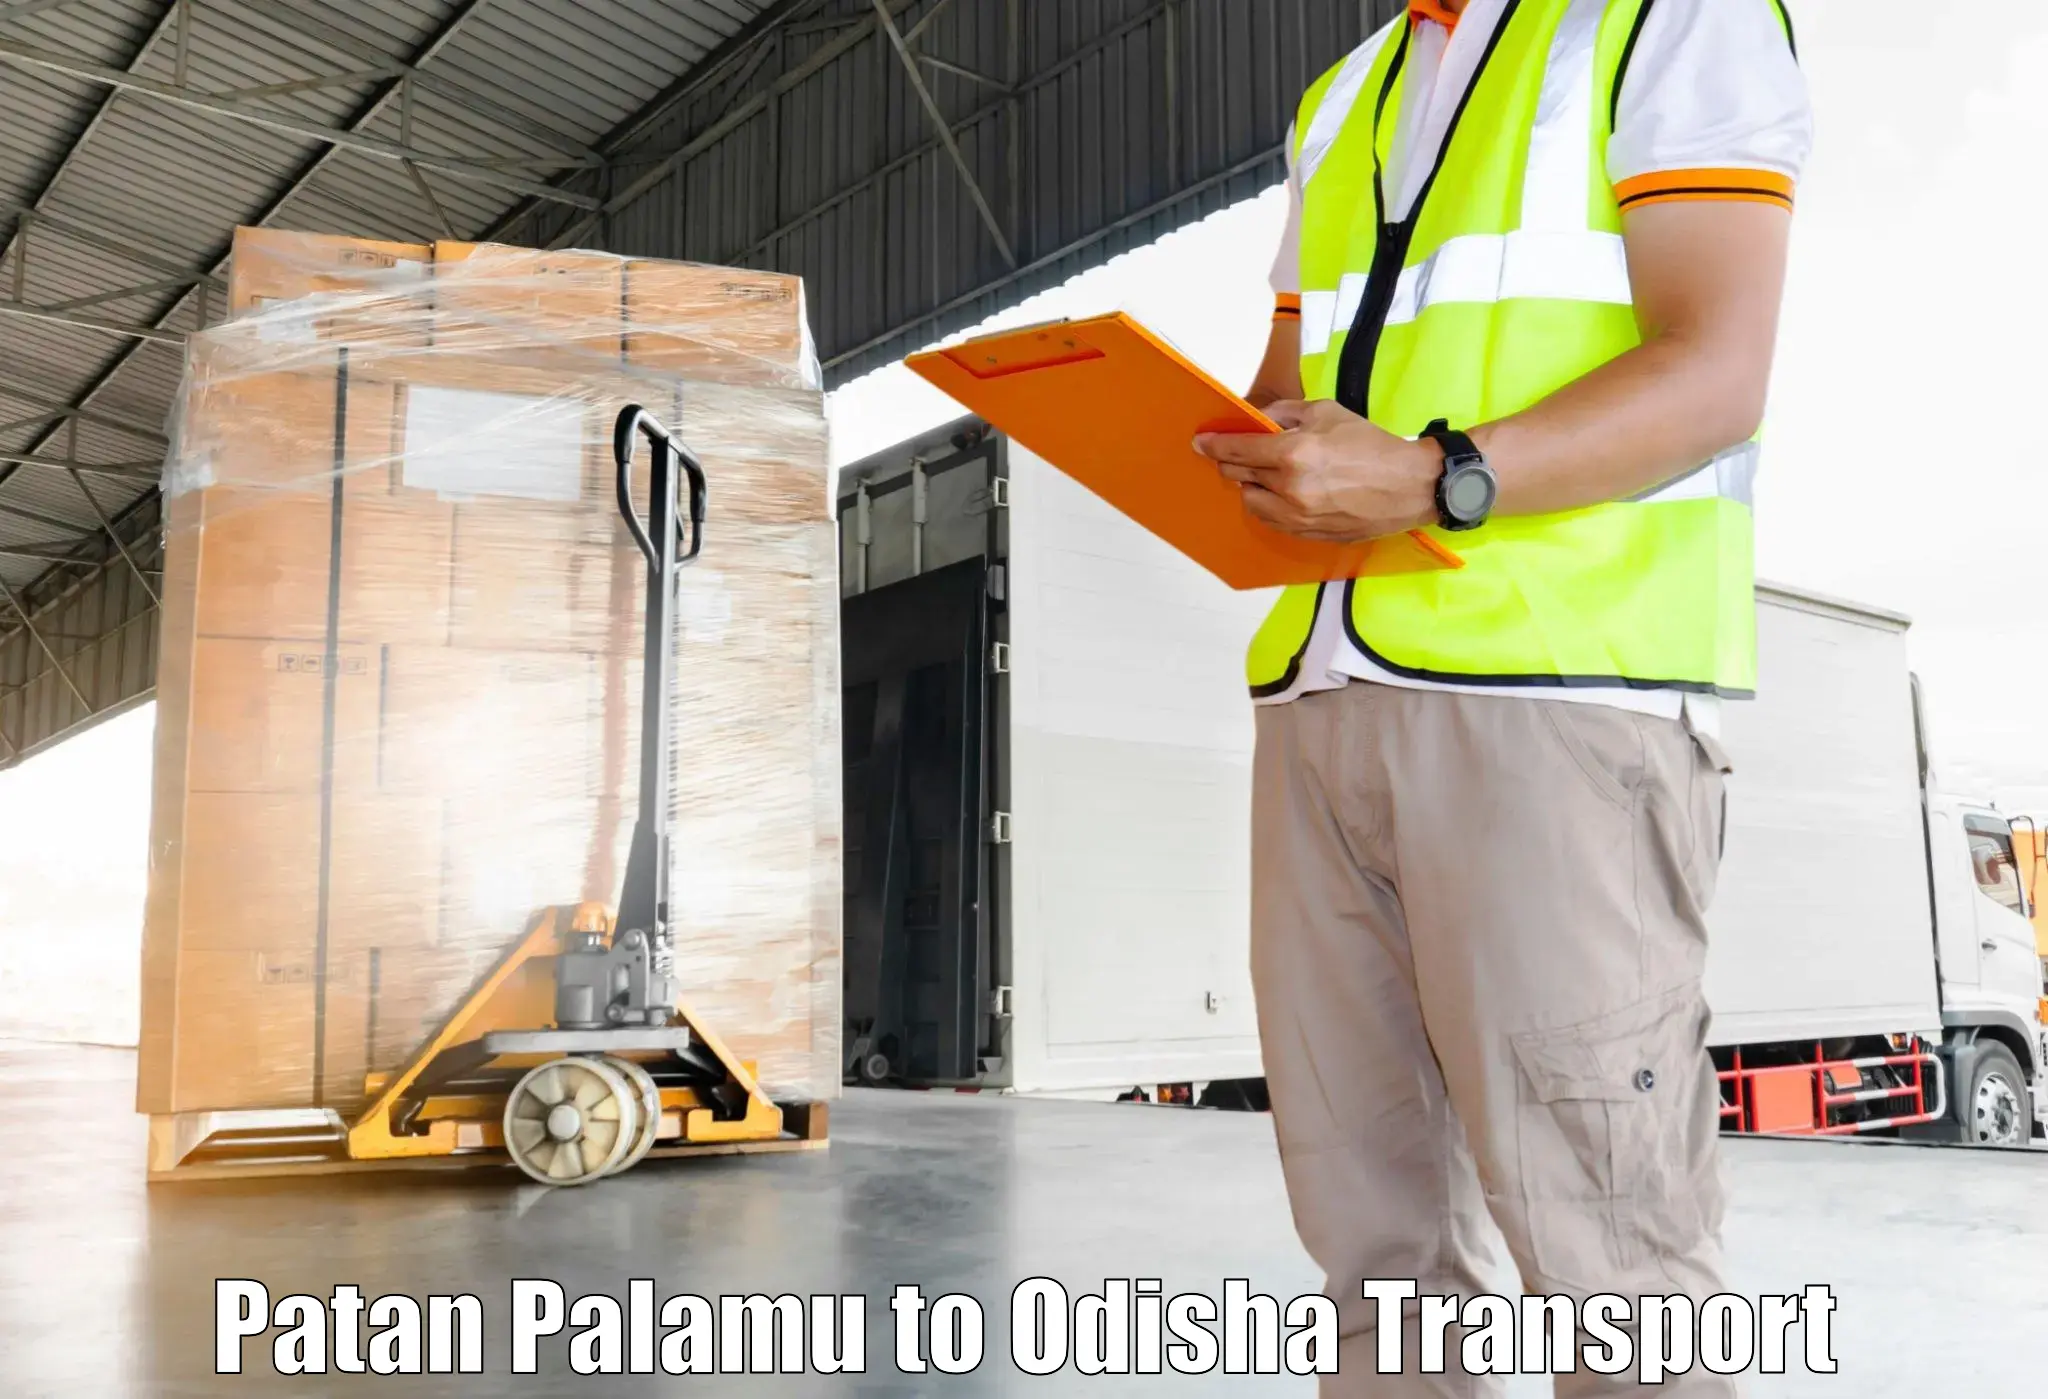 Online transport service Patan Palamu to Bhuban